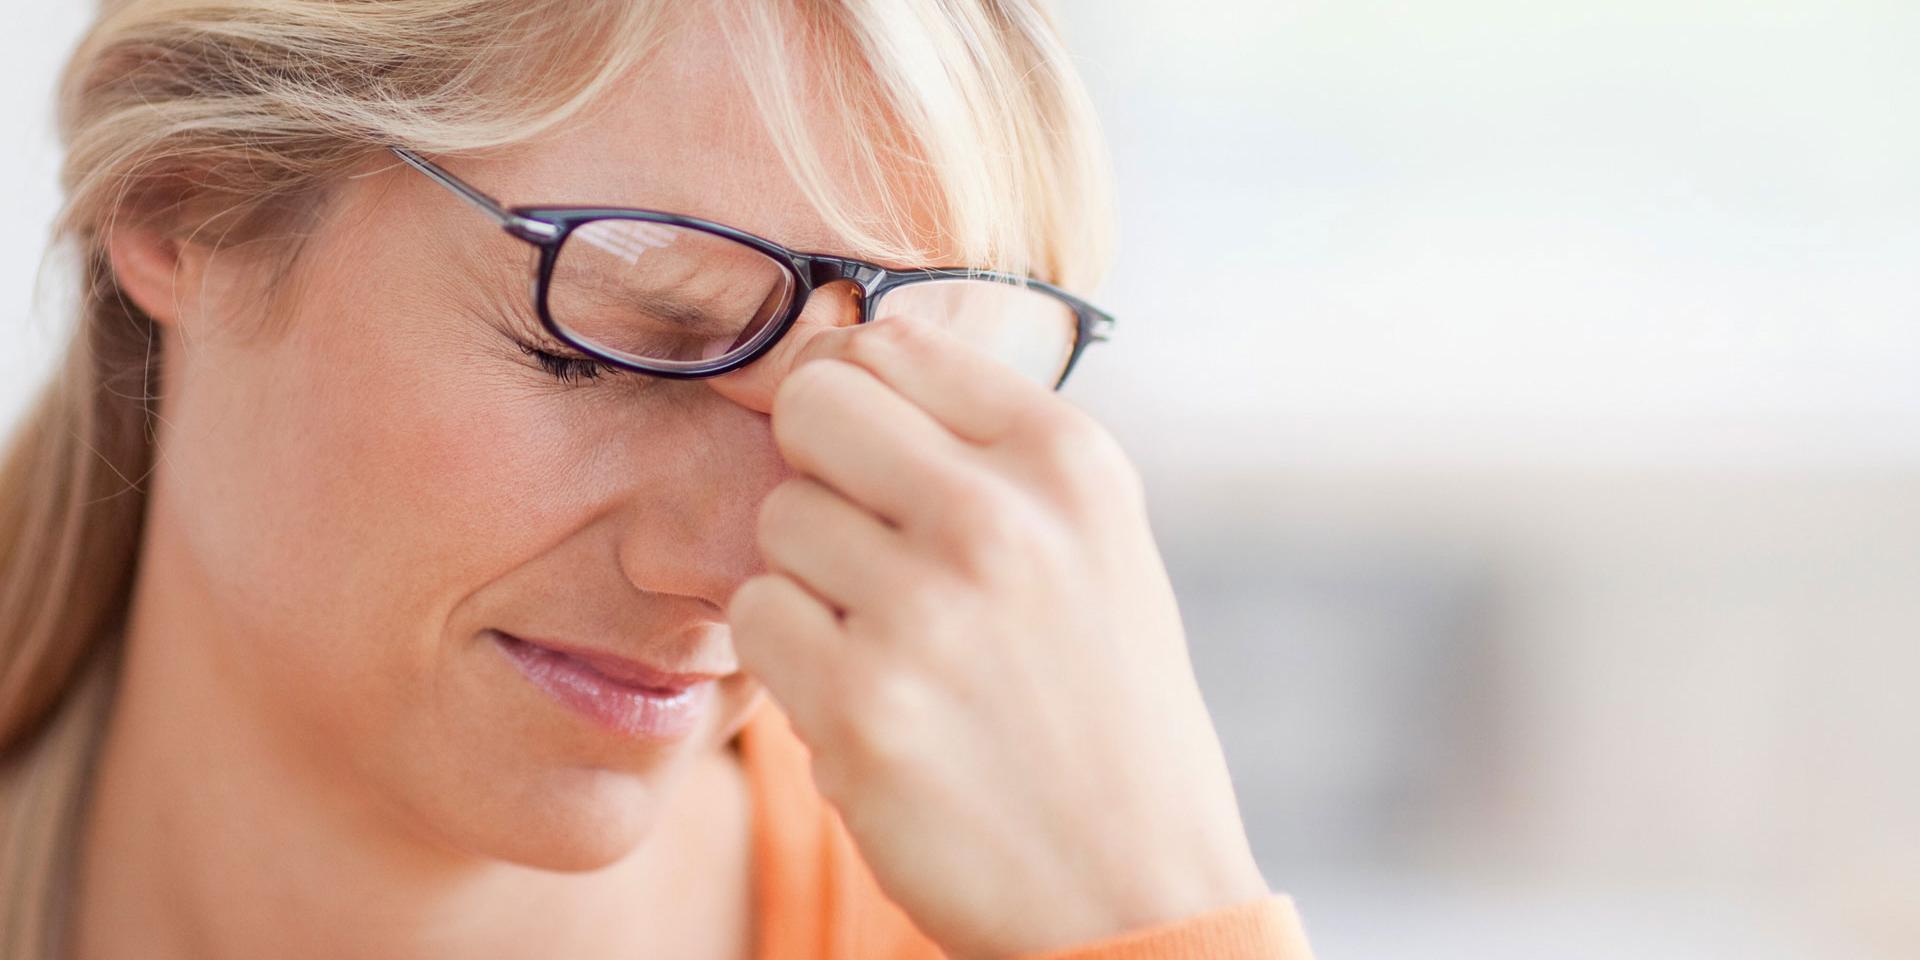 L’utilizzo degli occhiali sbagliati o condizioni di luce non adeguate possono danneggiare gli occhi?